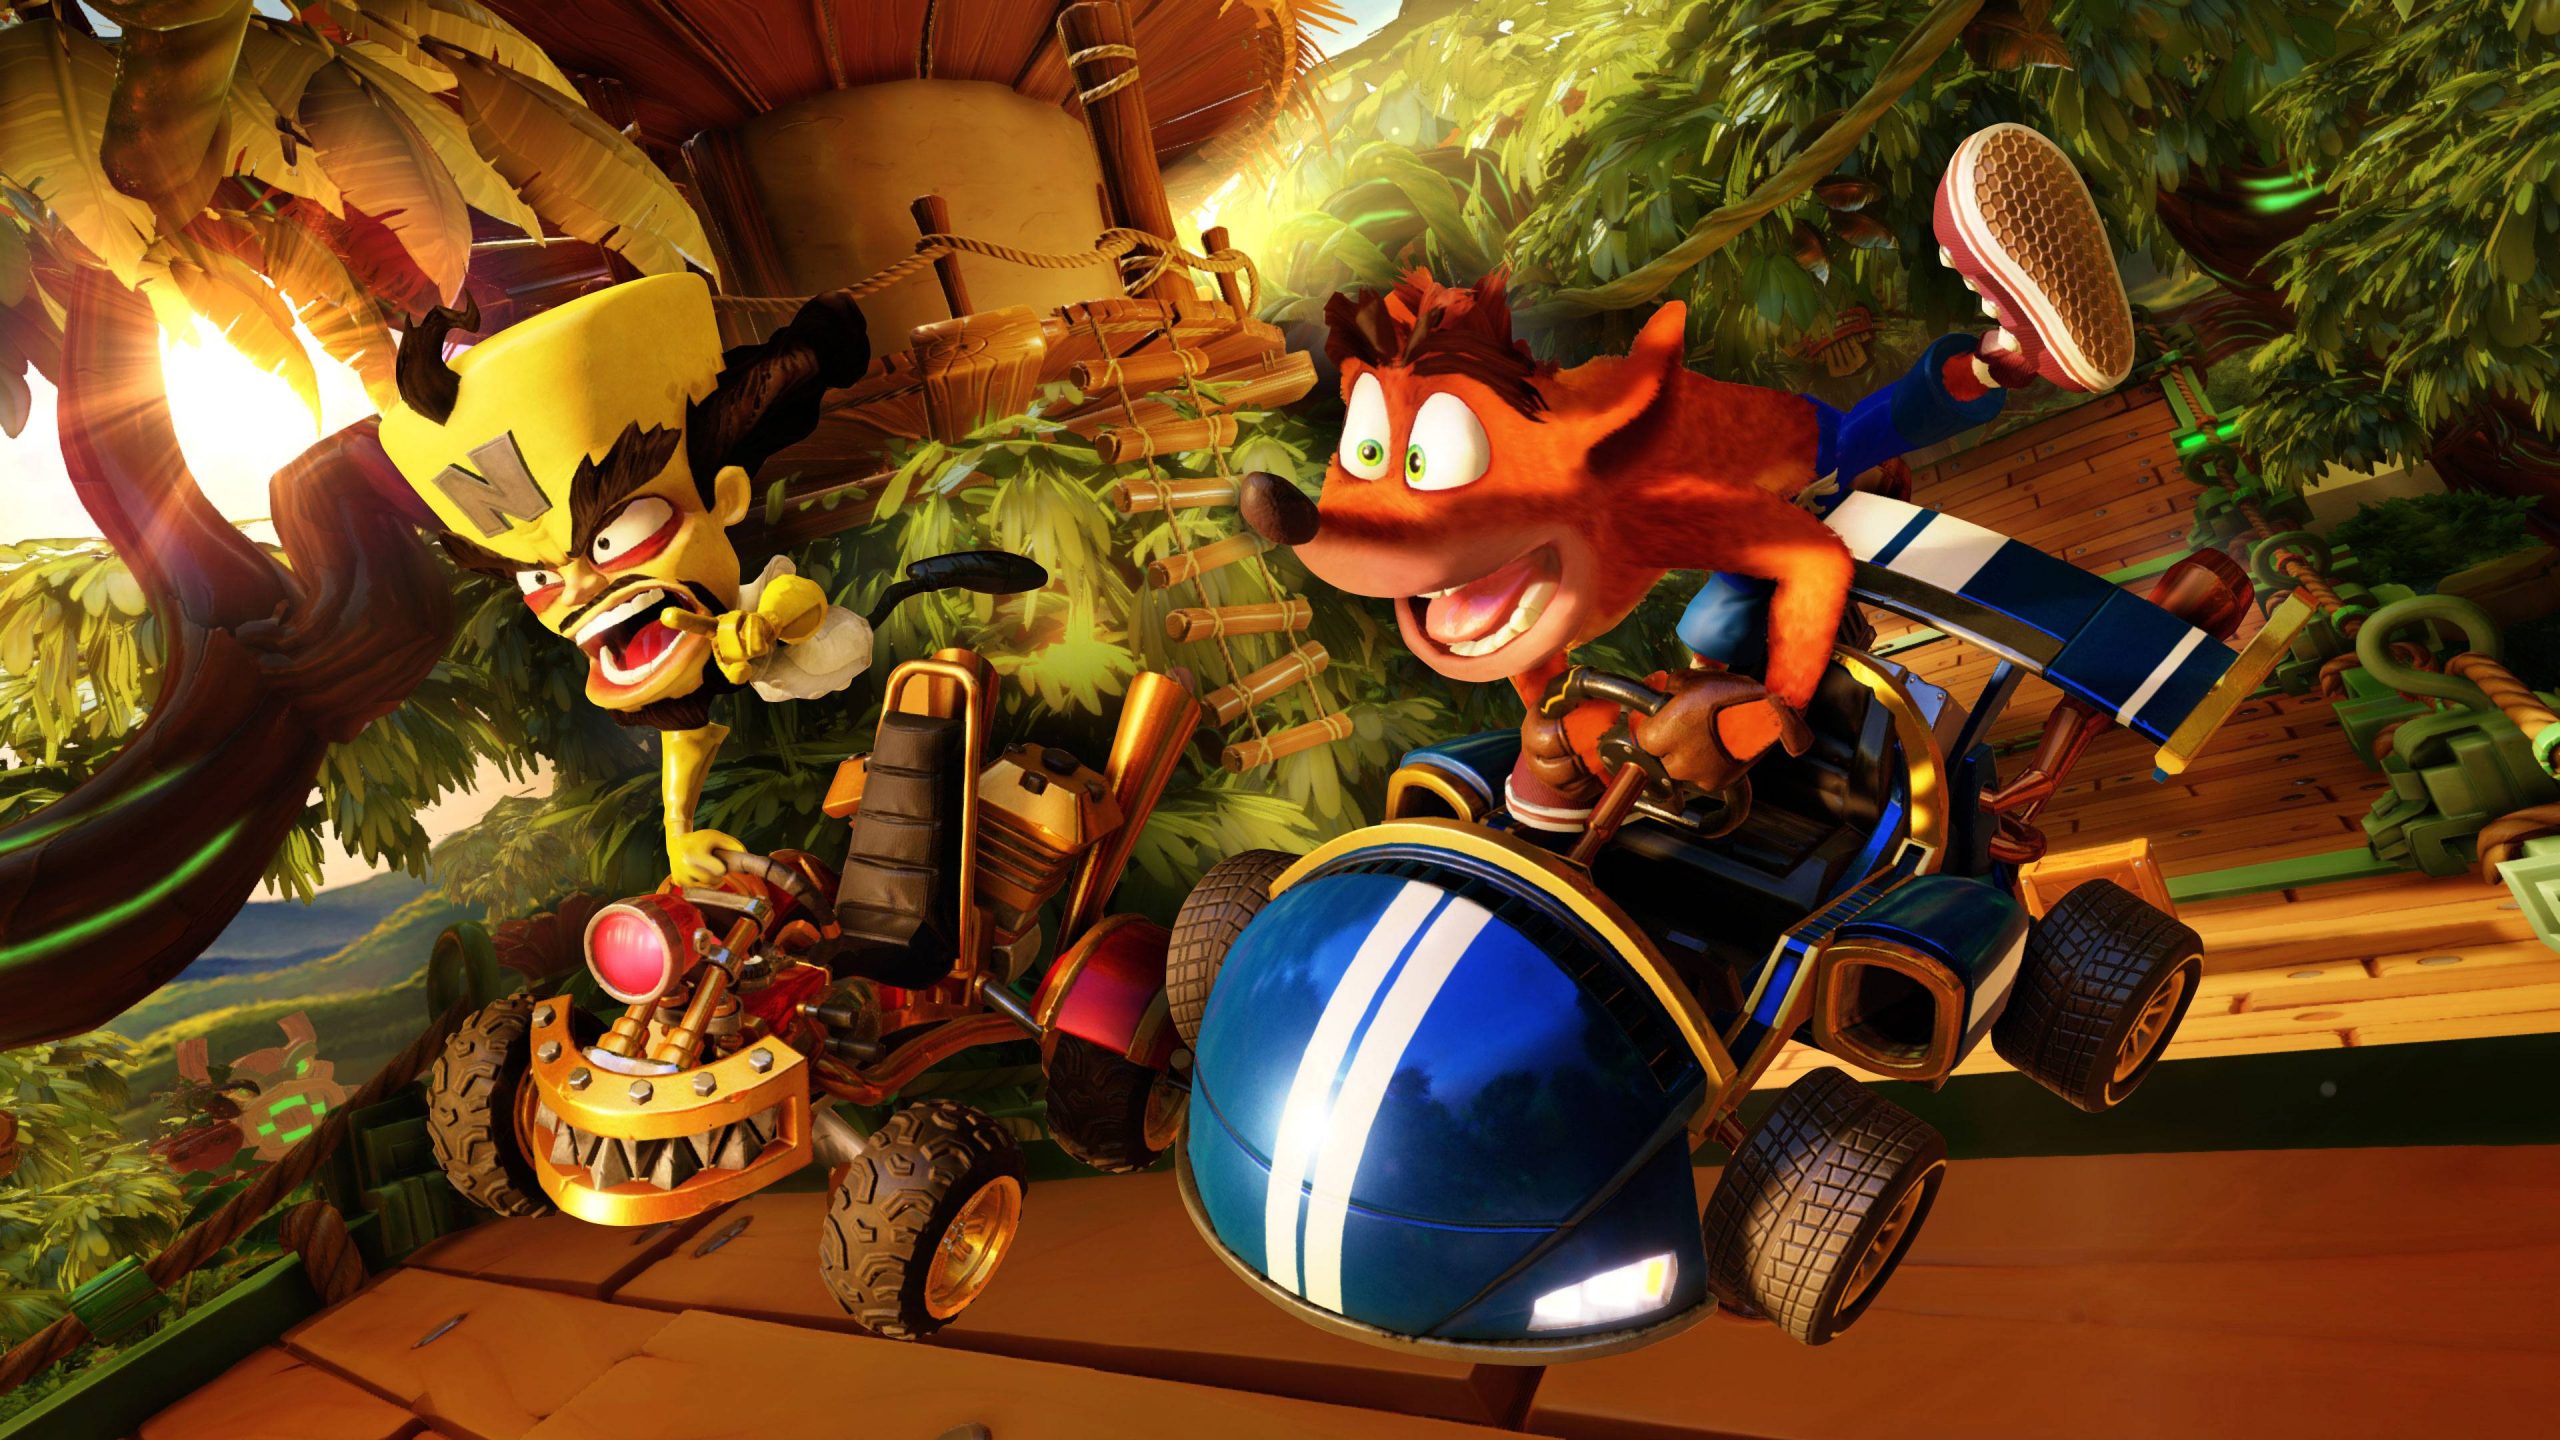 SEGA revela 3 novas personagens em Team Sonic Racing